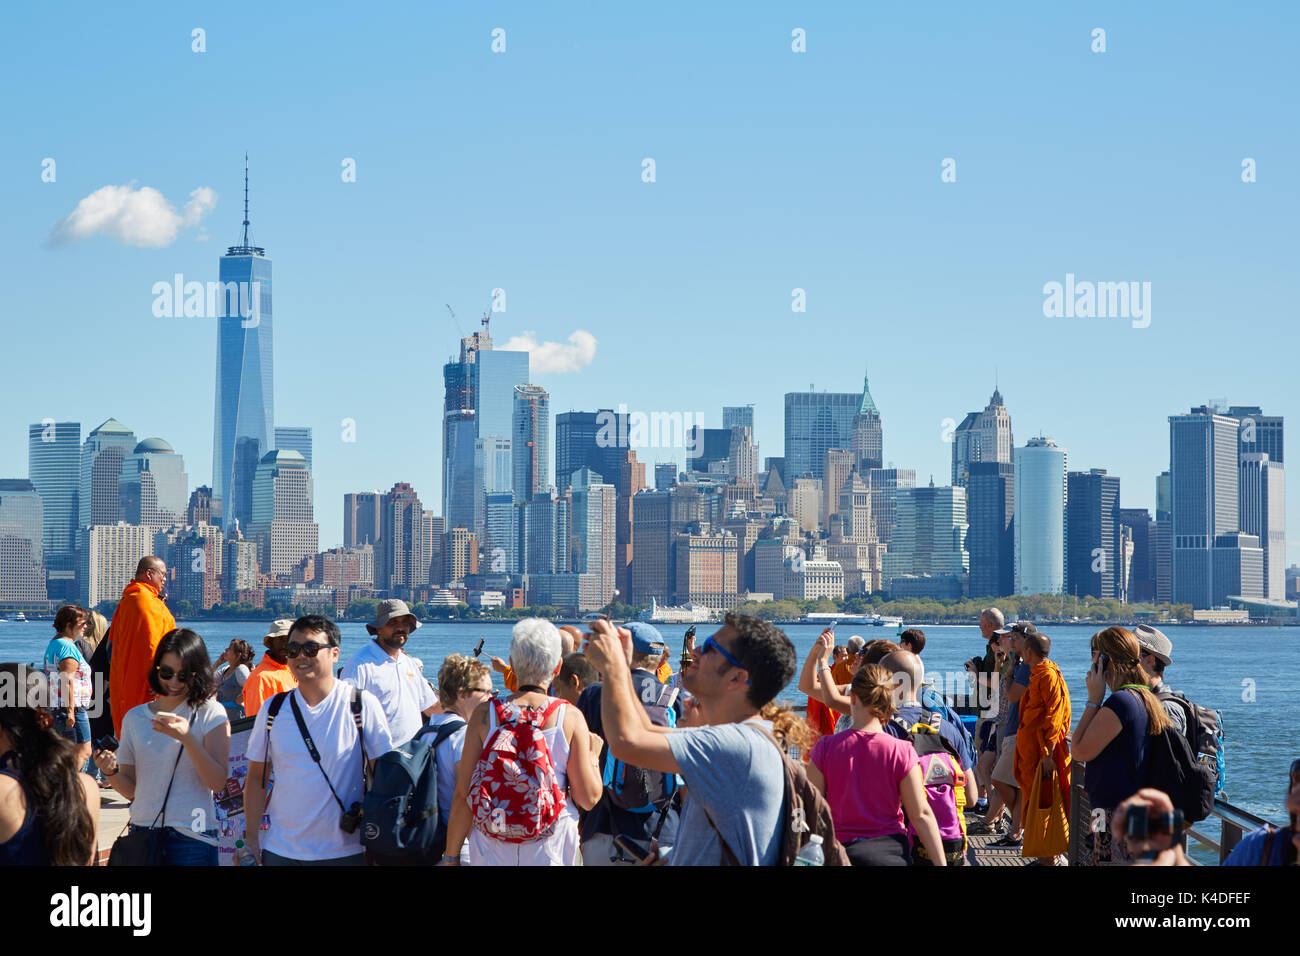 Les gens et les touristes prendre des photos et à la recherche à New York city skyline de Liberty Island in a sunny day Banque D'Images